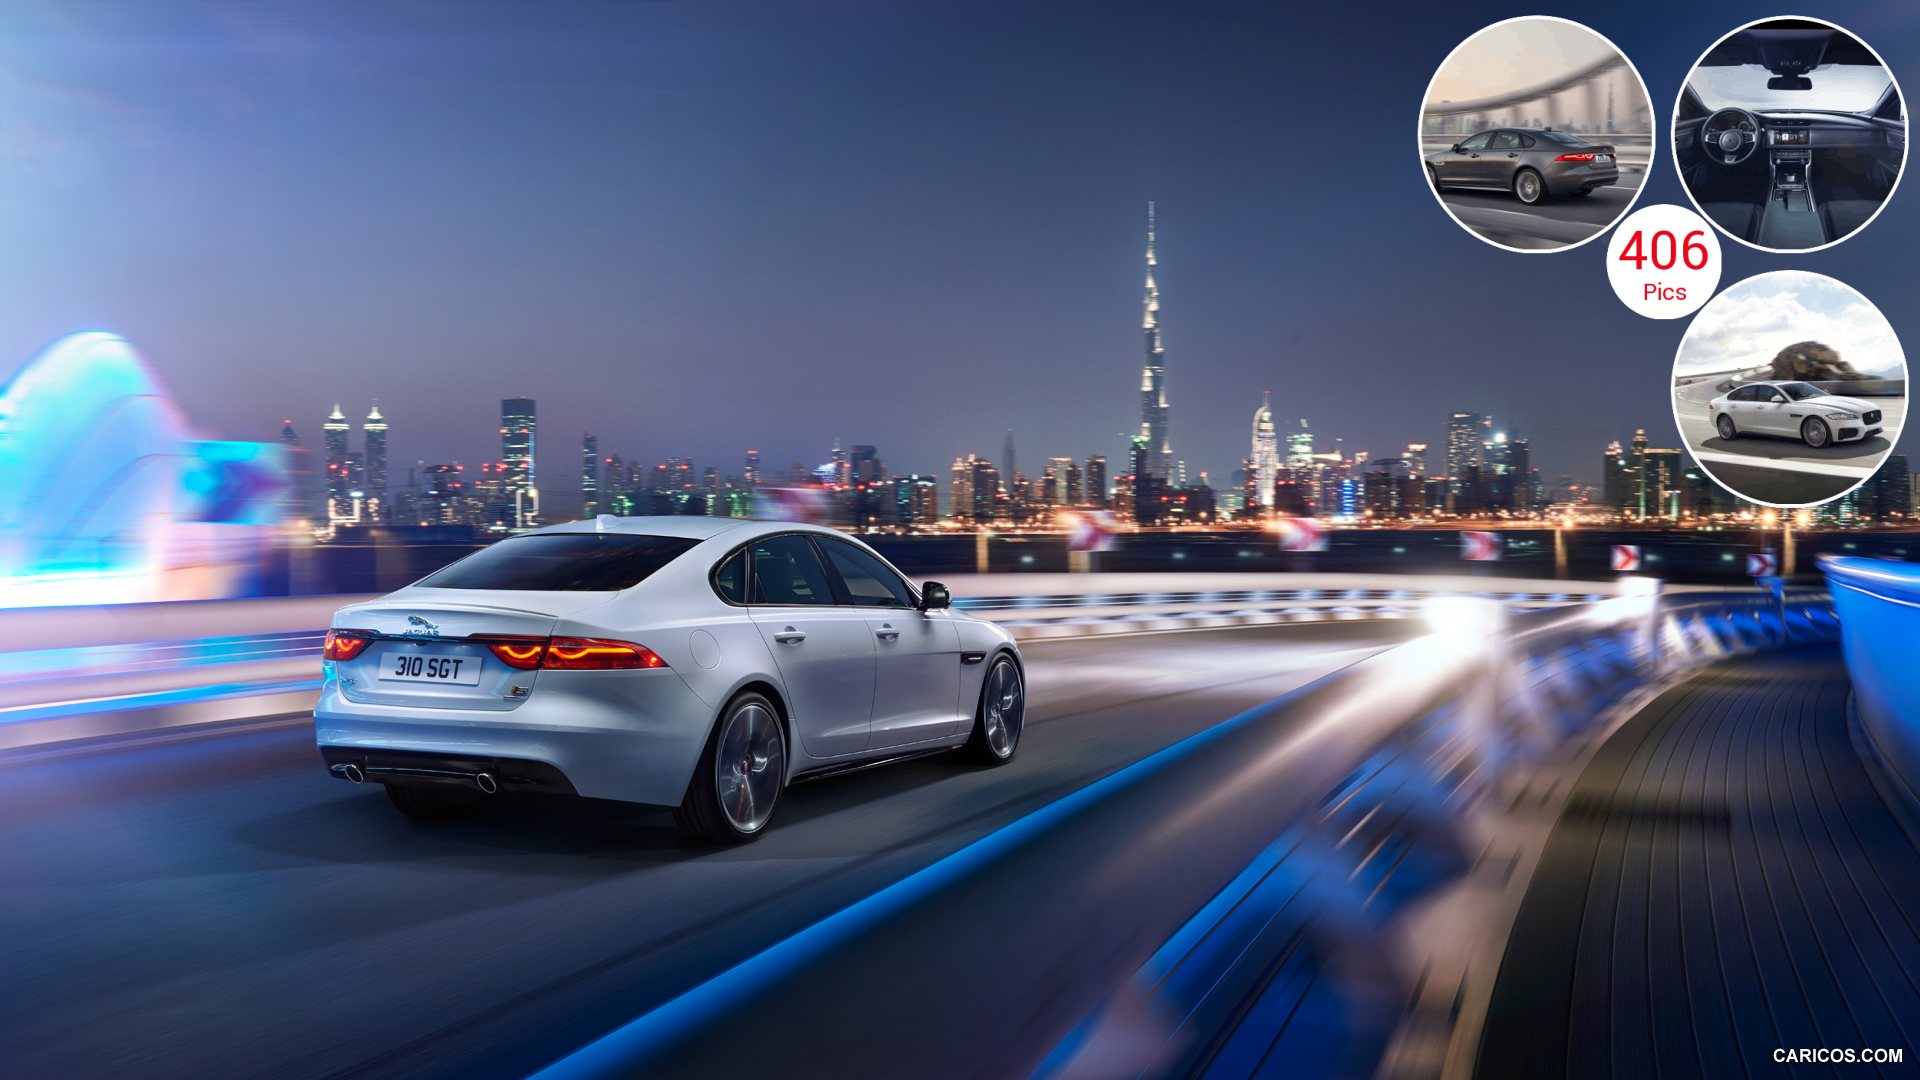 New Jaguar Car Dubai - HD Wallpaper 